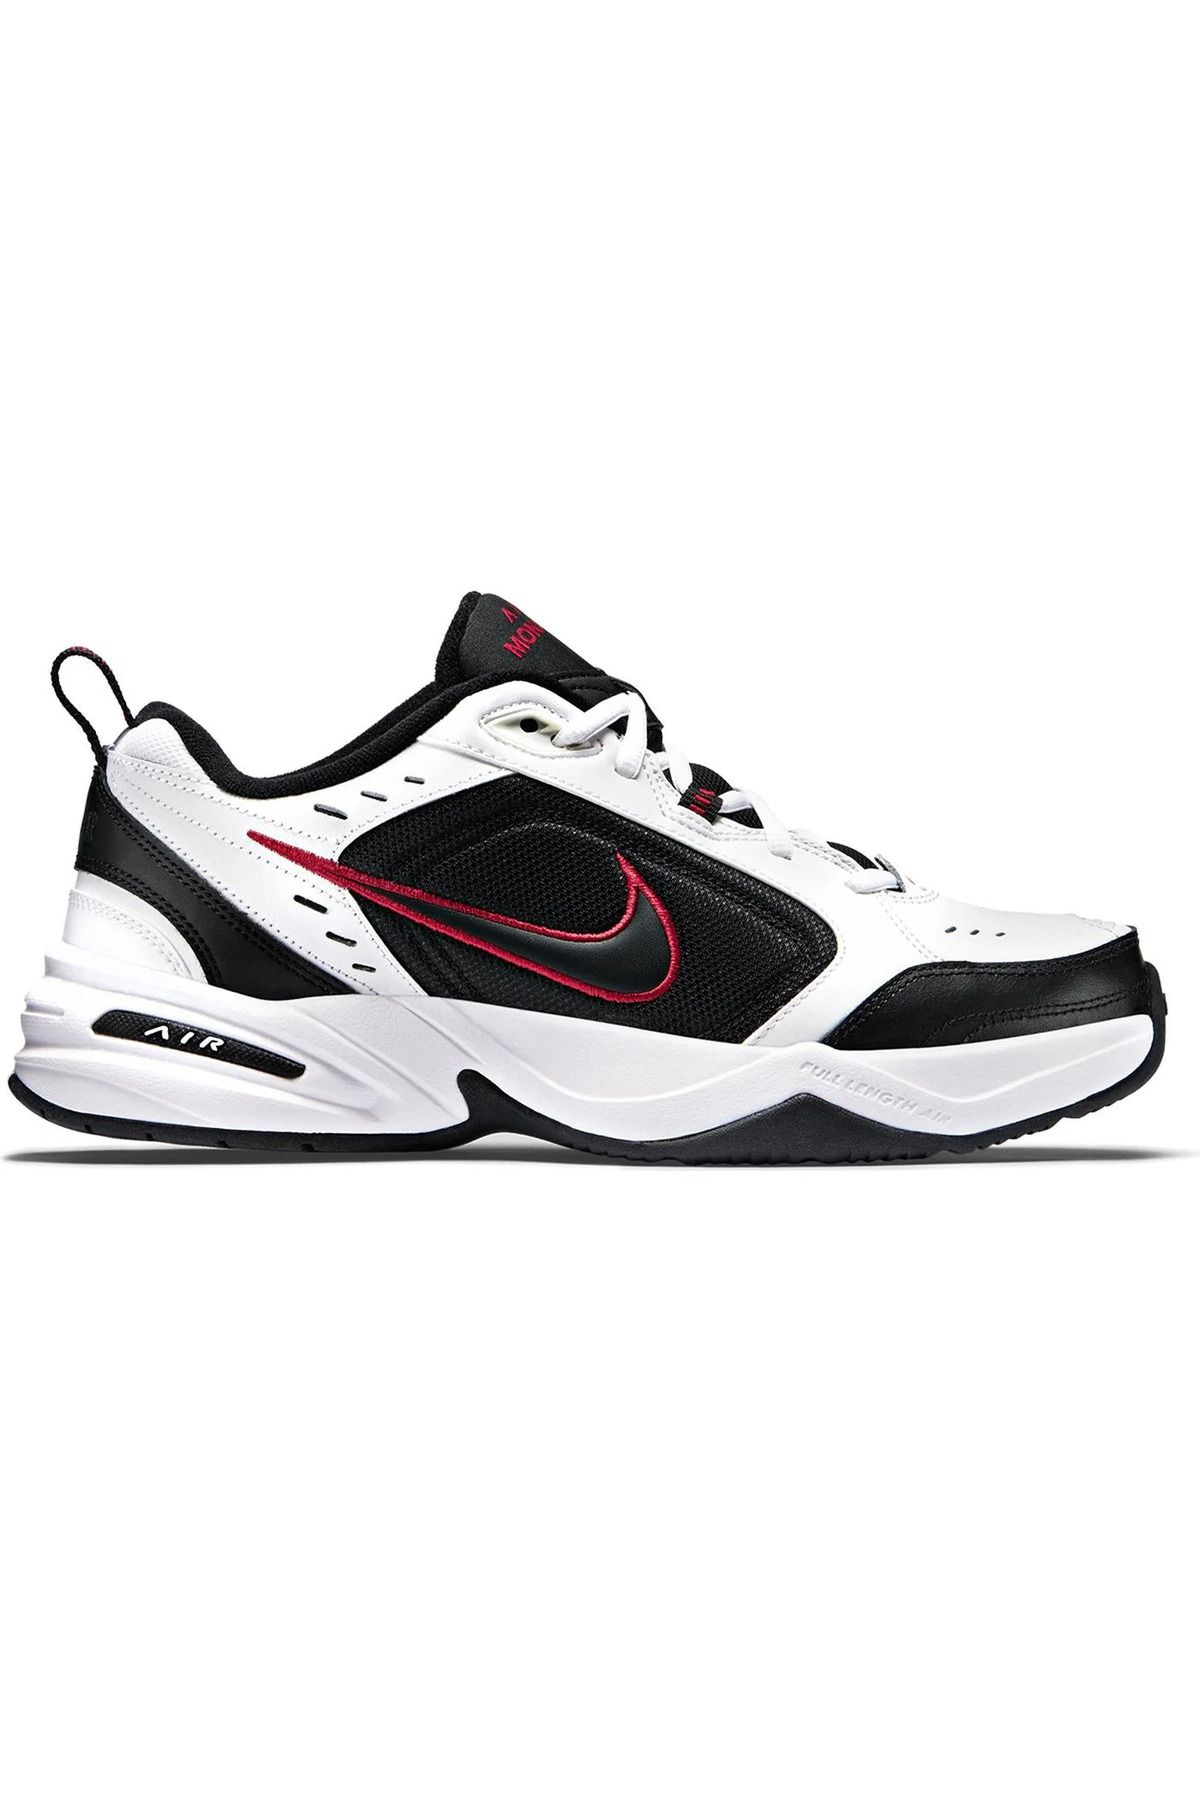 Nike Aır Monarch Iv Erkek Günlük Ayakkabısı 415445-101